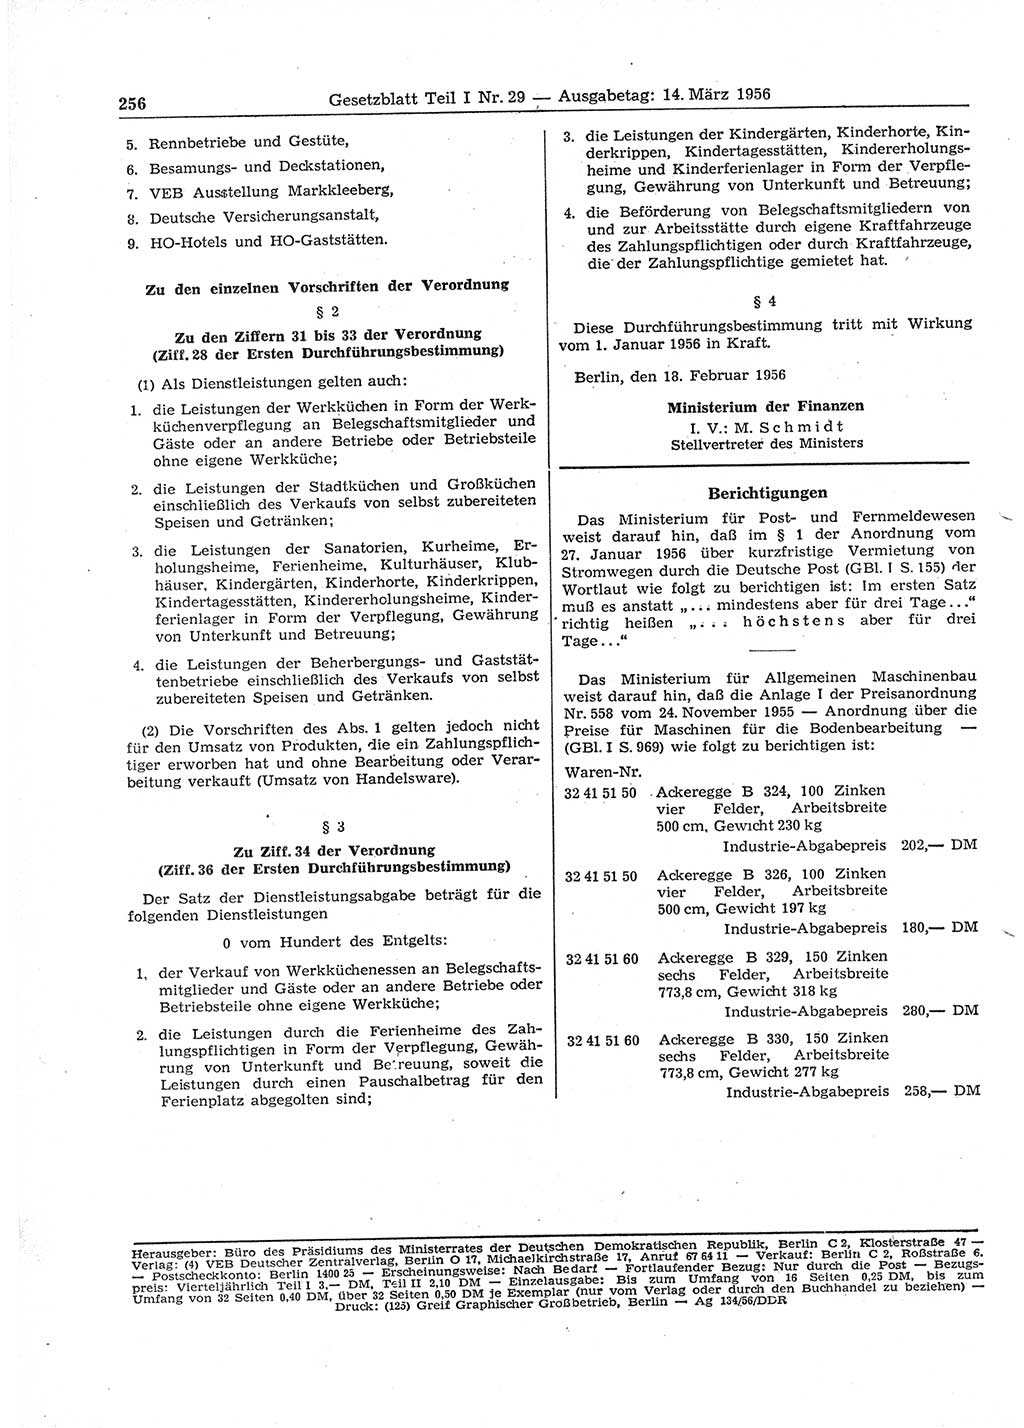 Gesetzblatt (GBl.) der Deutschen Demokratischen Republik (DDR) Teil Ⅰ 1956, Seite 256 (GBl. DDR Ⅰ 1956, S. 256)